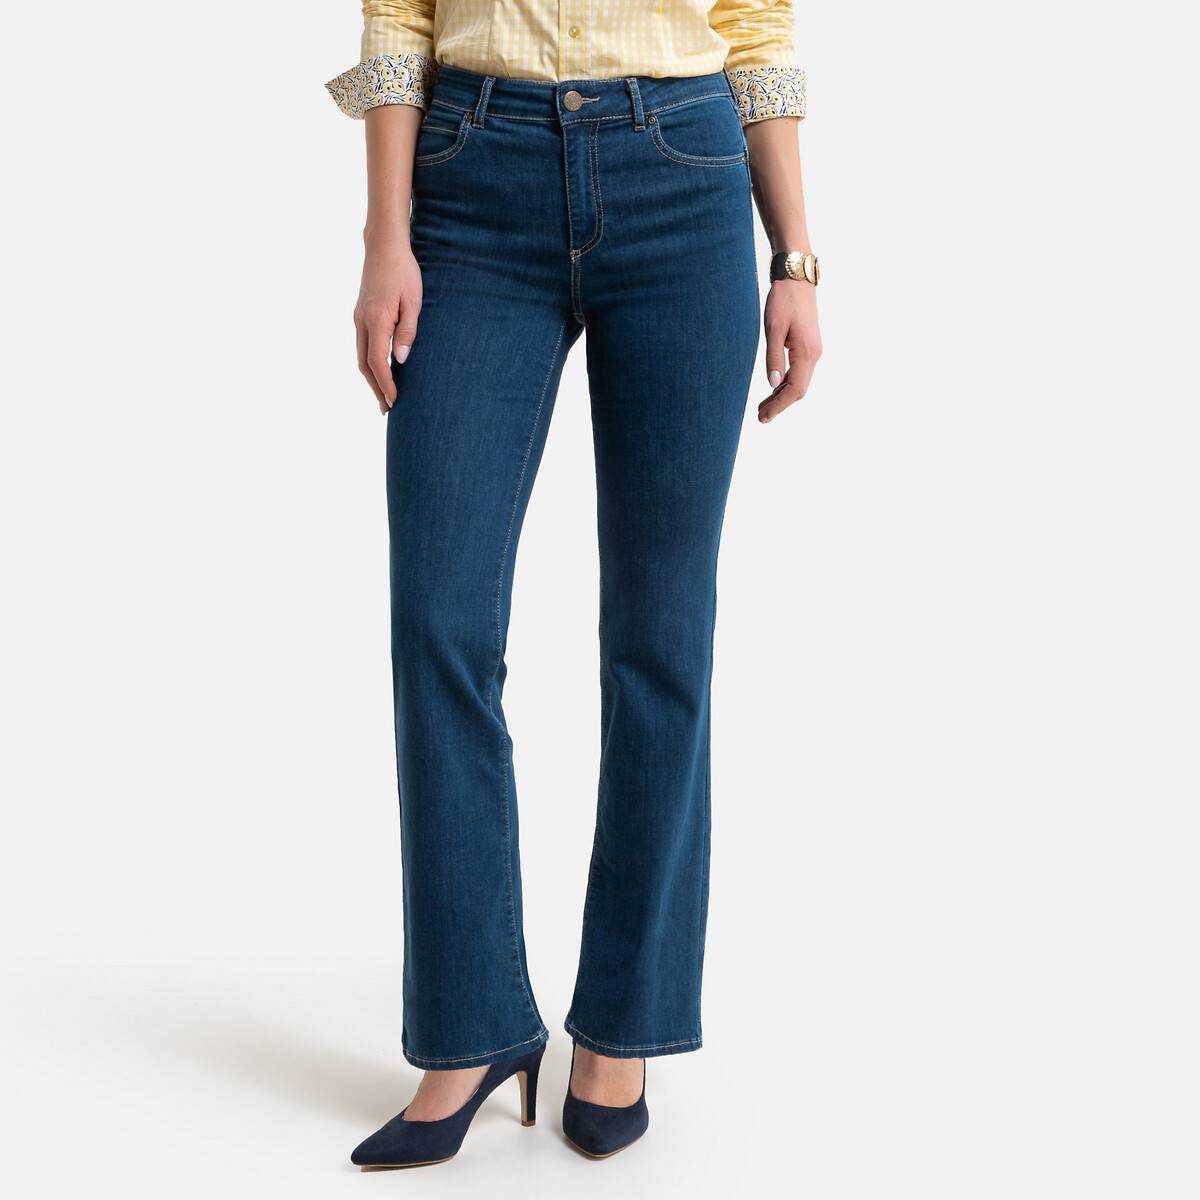 Женские джинсы буткат сочетаются с любым стилем Что такое джинсы буткаты Чем джинсы буткат отличаются от расклешенных, какая должна быть длина джинсов буткат и с чем носить джинсы буткат